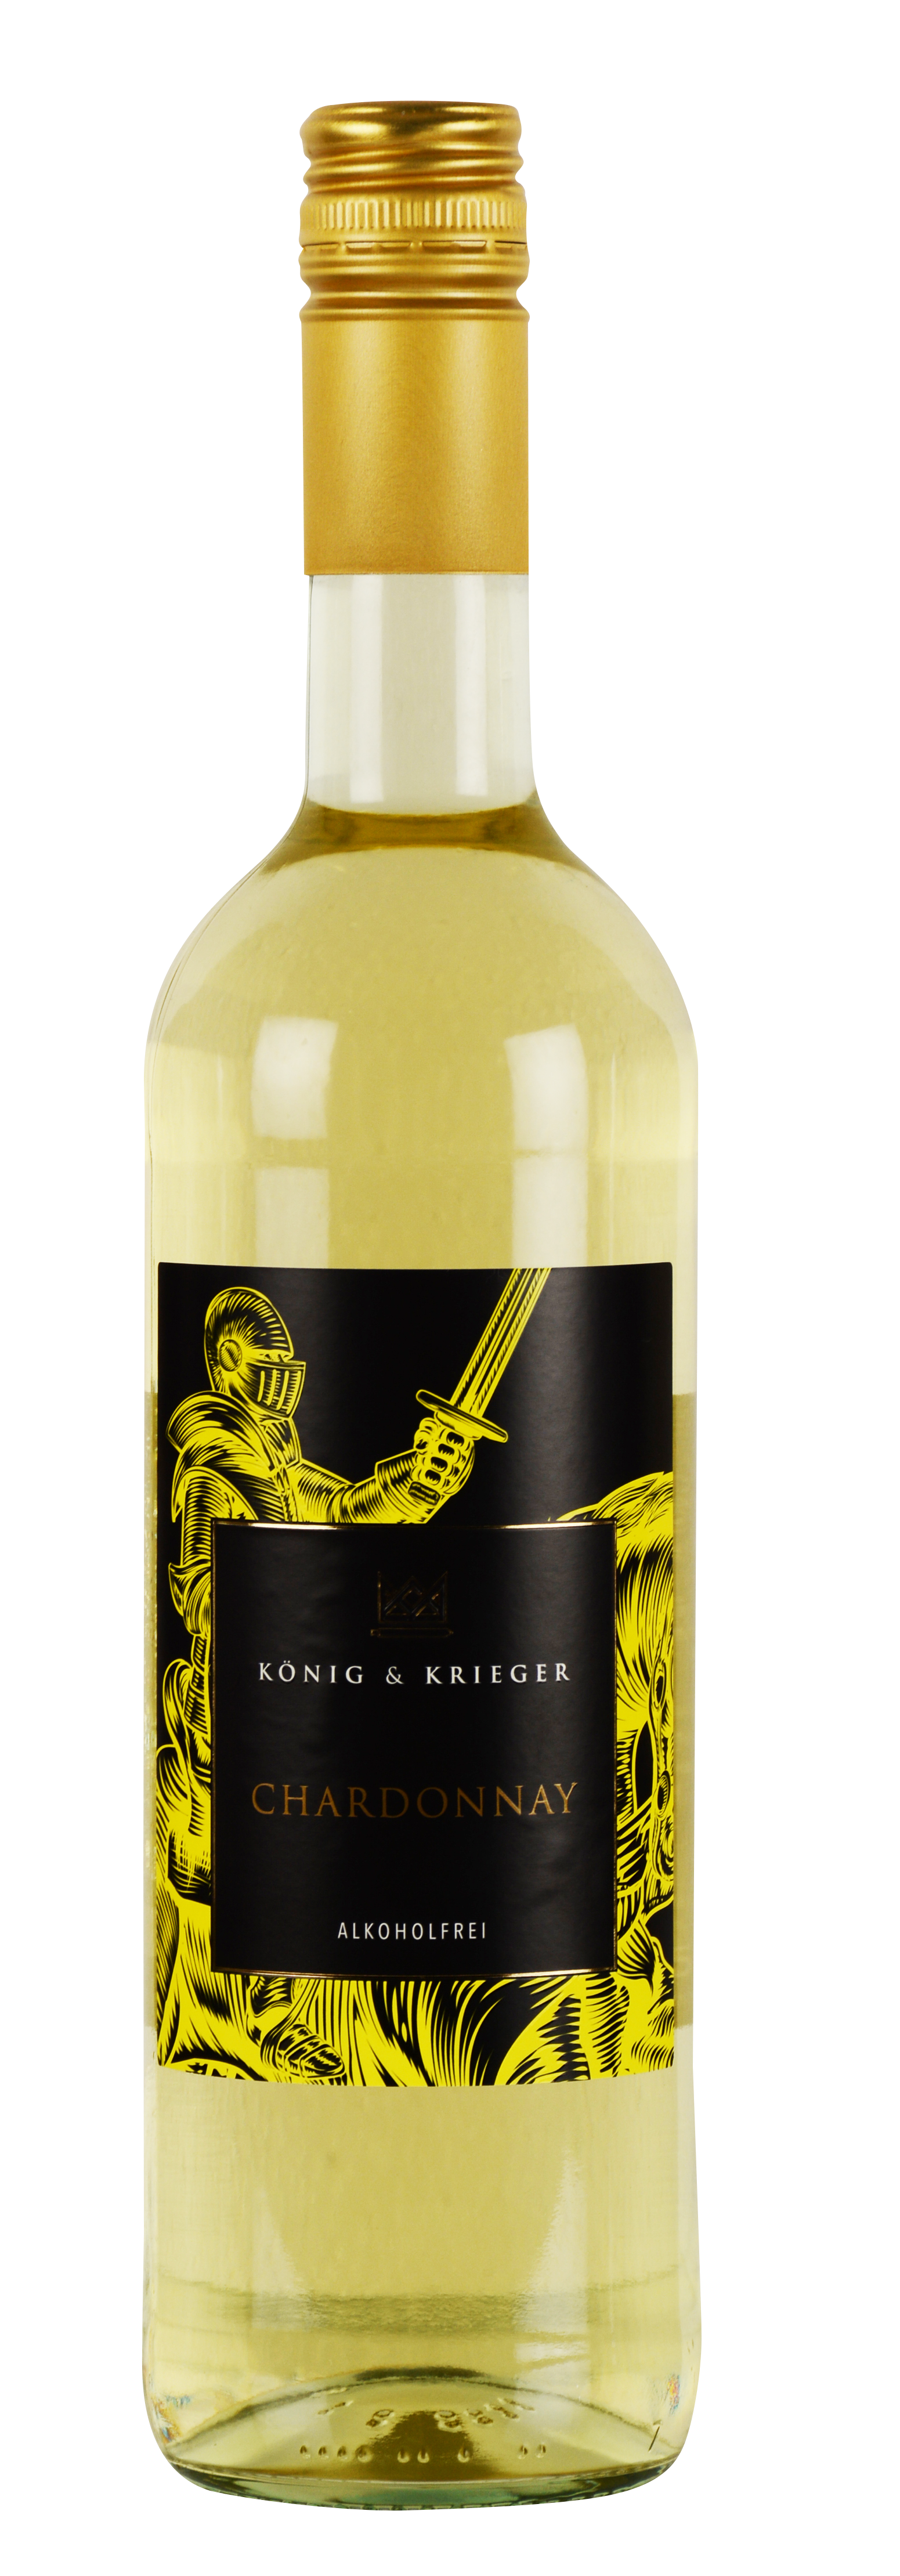 König & Krieger Chardonnay alkoholfreier Wein